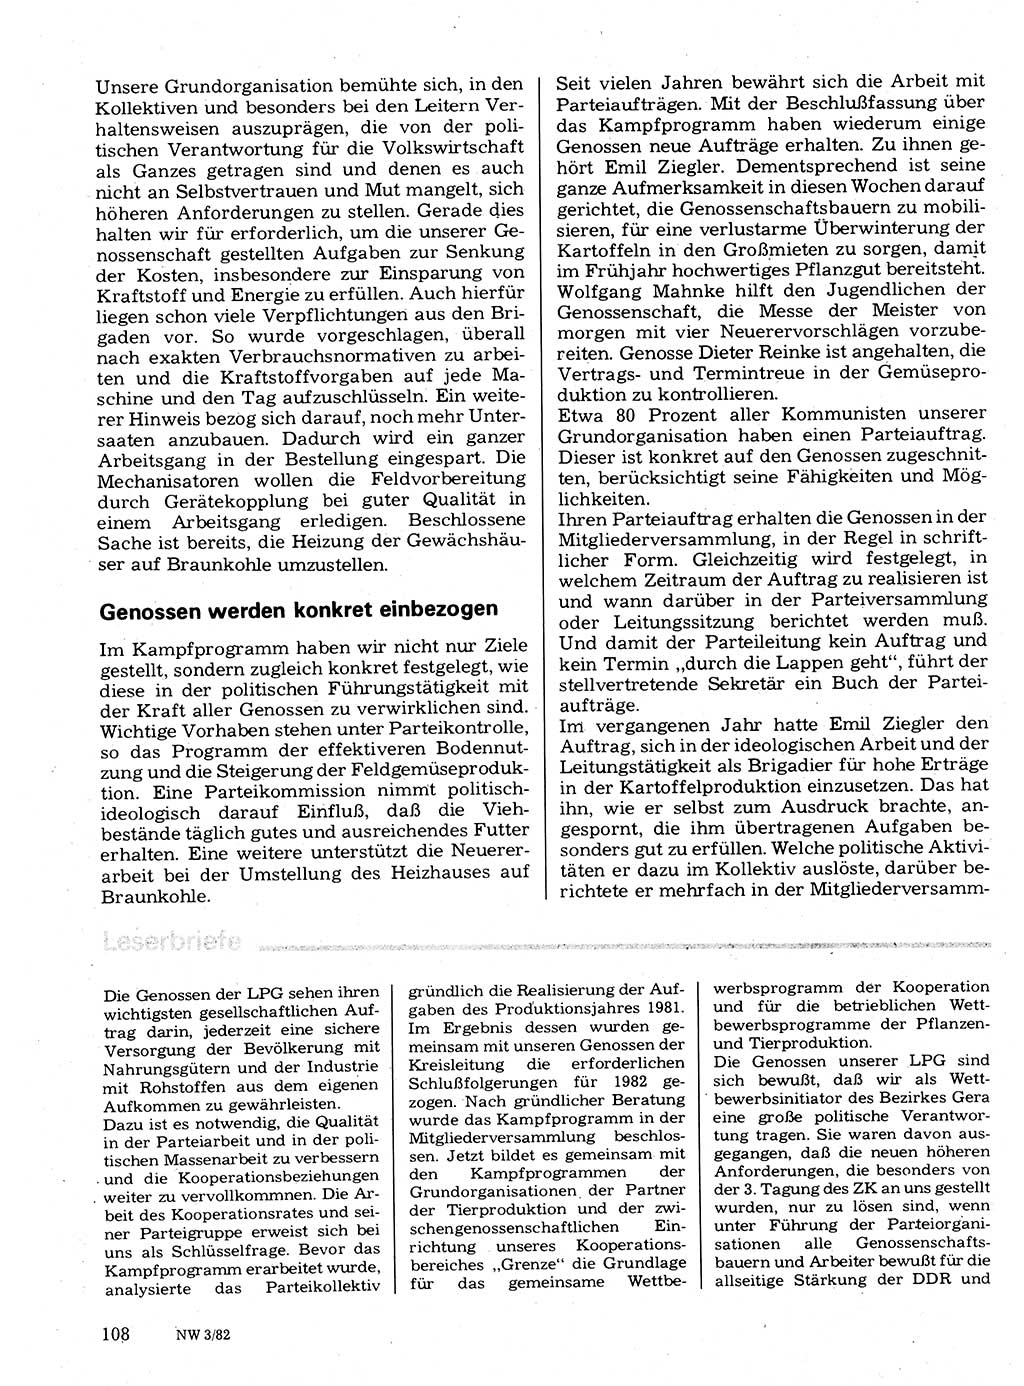 Neuer Weg (NW), Organ des Zentralkomitees (ZK) der SED (Sozialistische Einheitspartei Deutschlands) für Fragen des Parteilebens, 37. Jahrgang [Deutsche Demokratische Republik (DDR)] 1982, Seite 108 (NW ZK SED DDR 1982, S. 108)